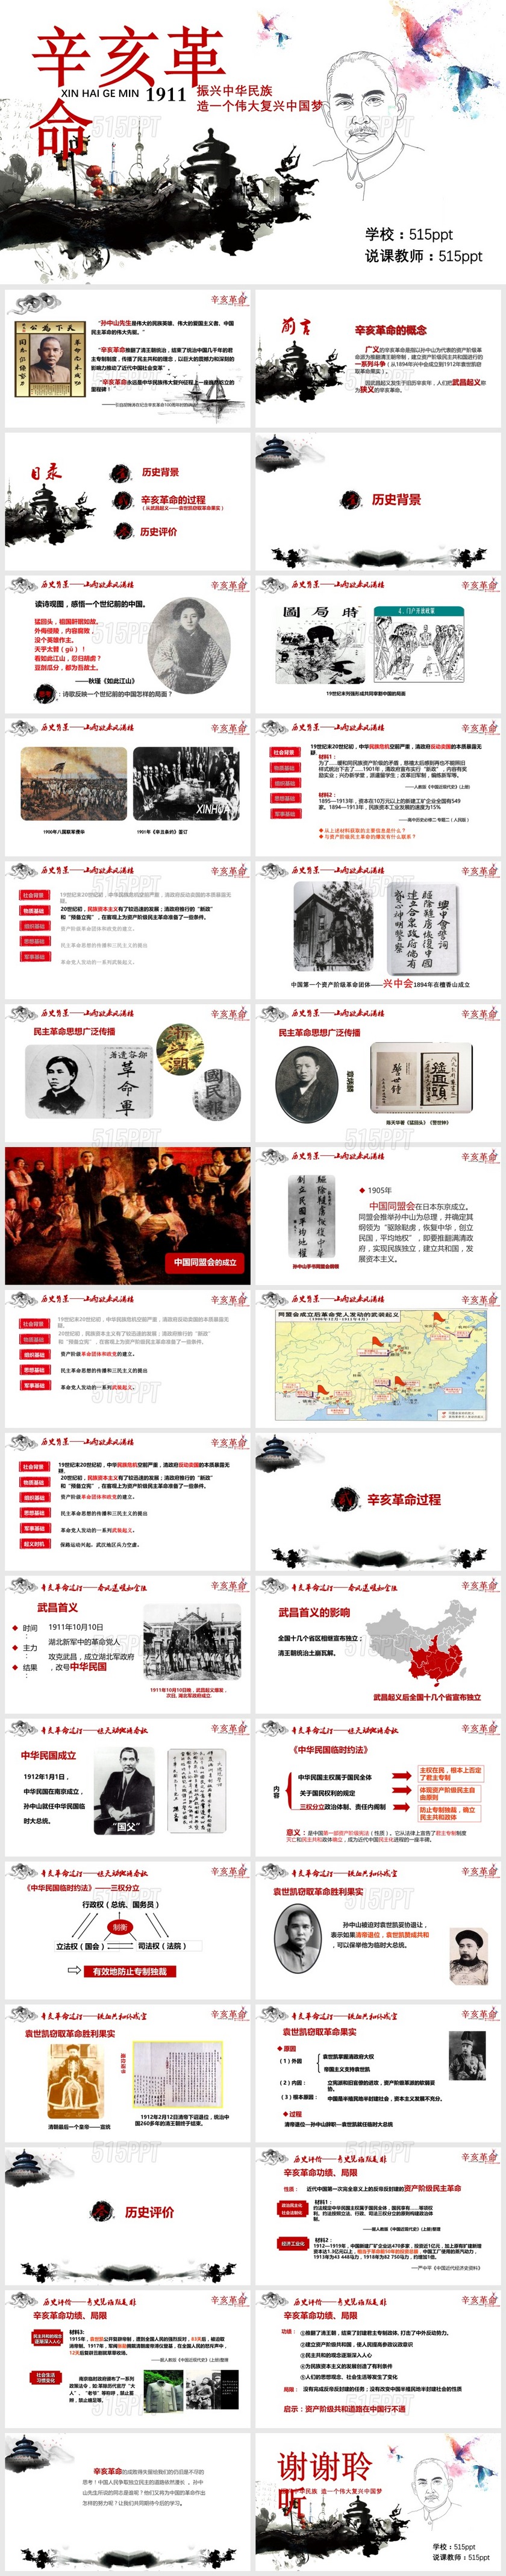 辛亥革命振兴中华民族造一个伟大复兴中国梦PPT模板